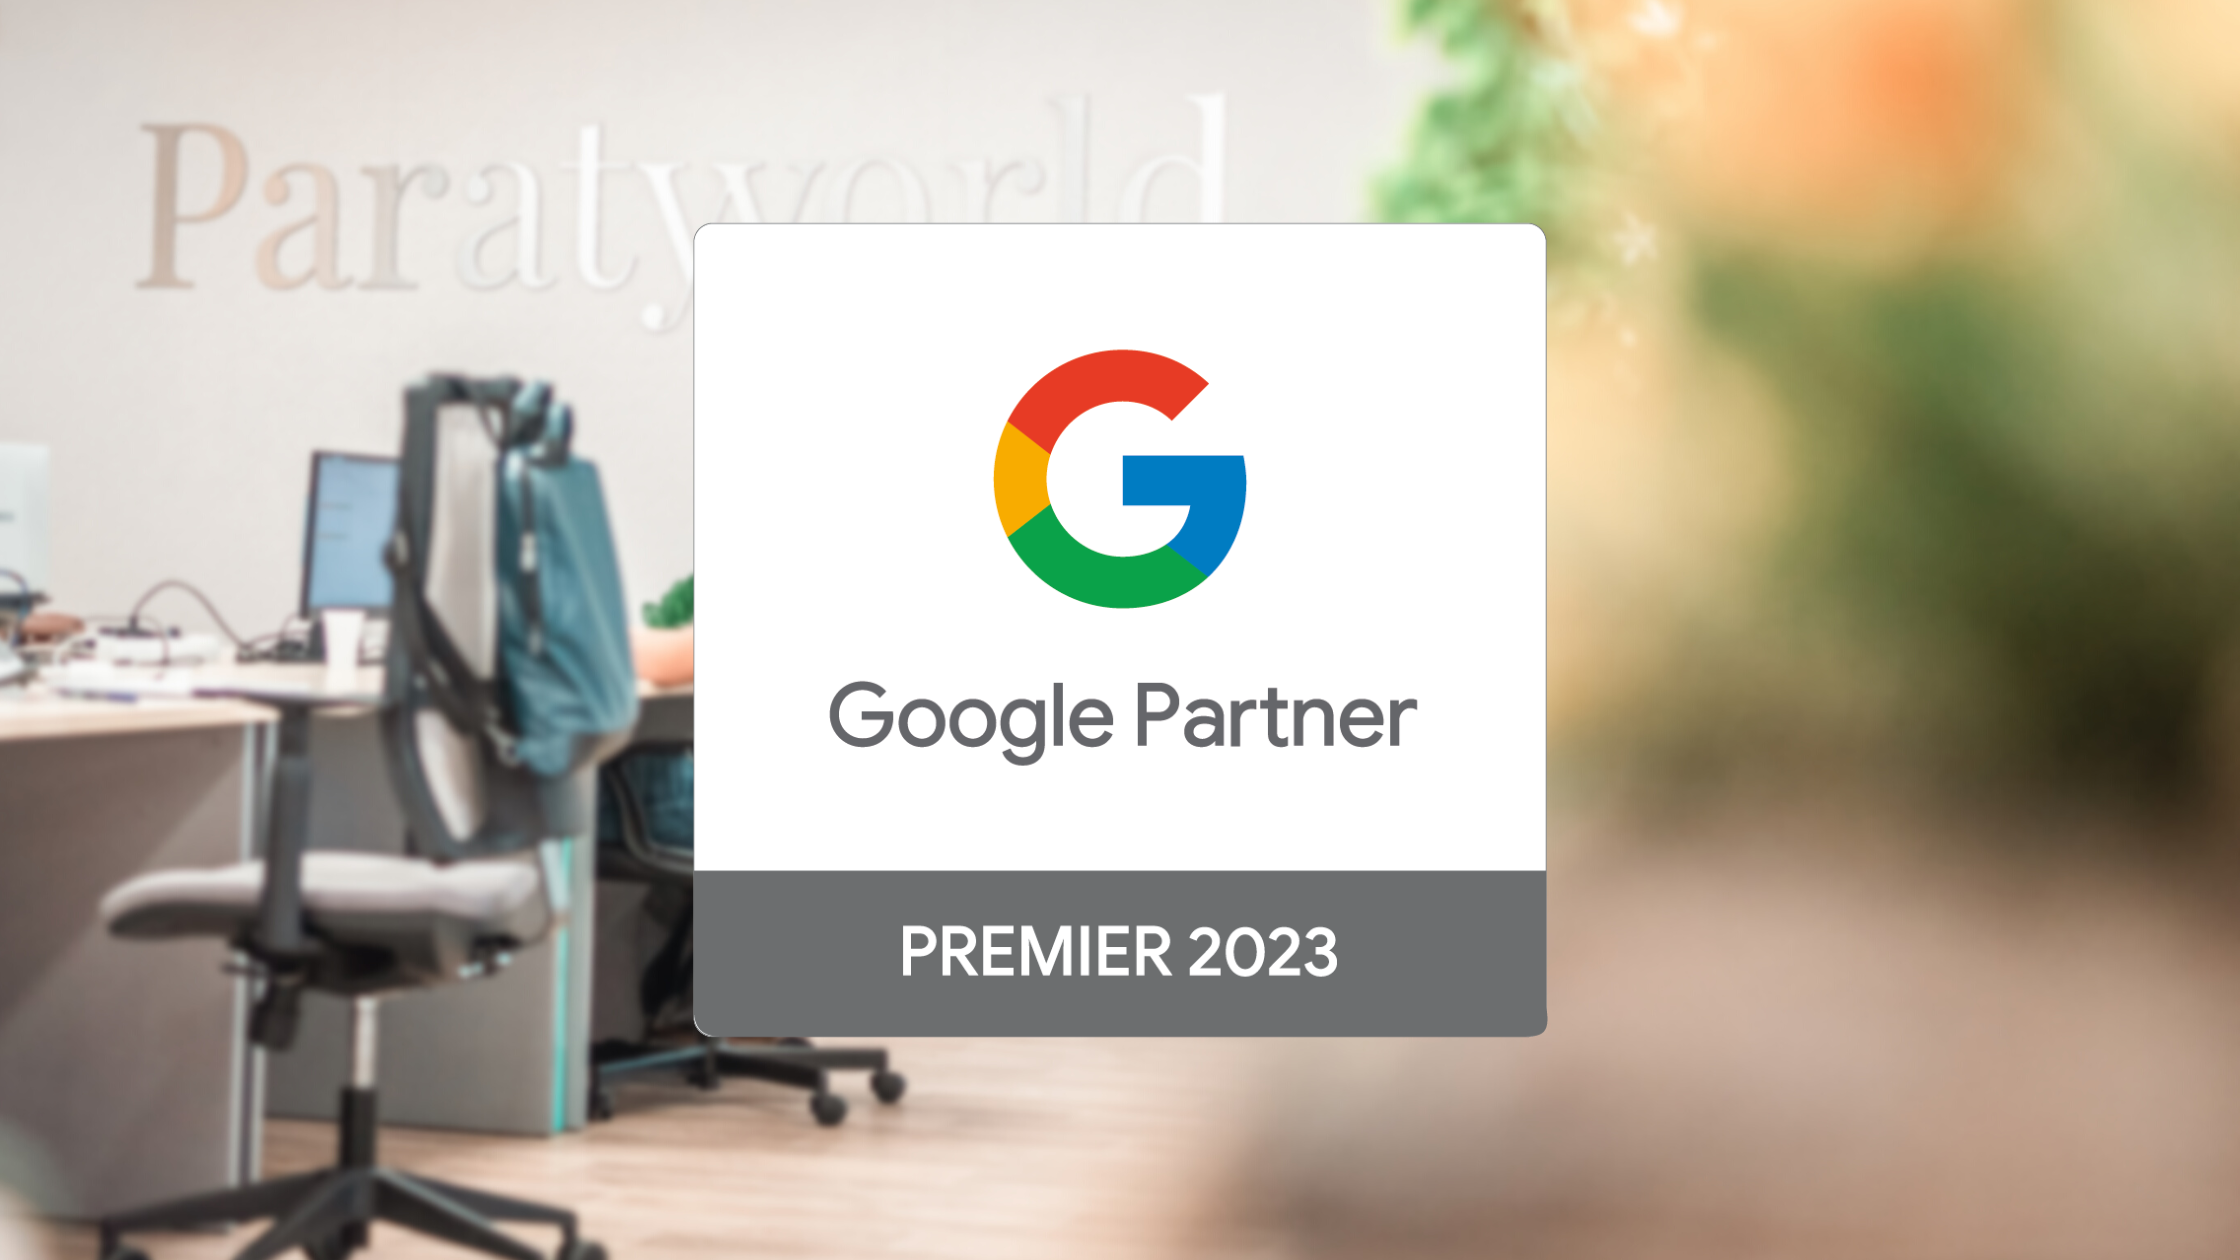 Paraty Tech obtains Google Partner Premier 2023 recognition